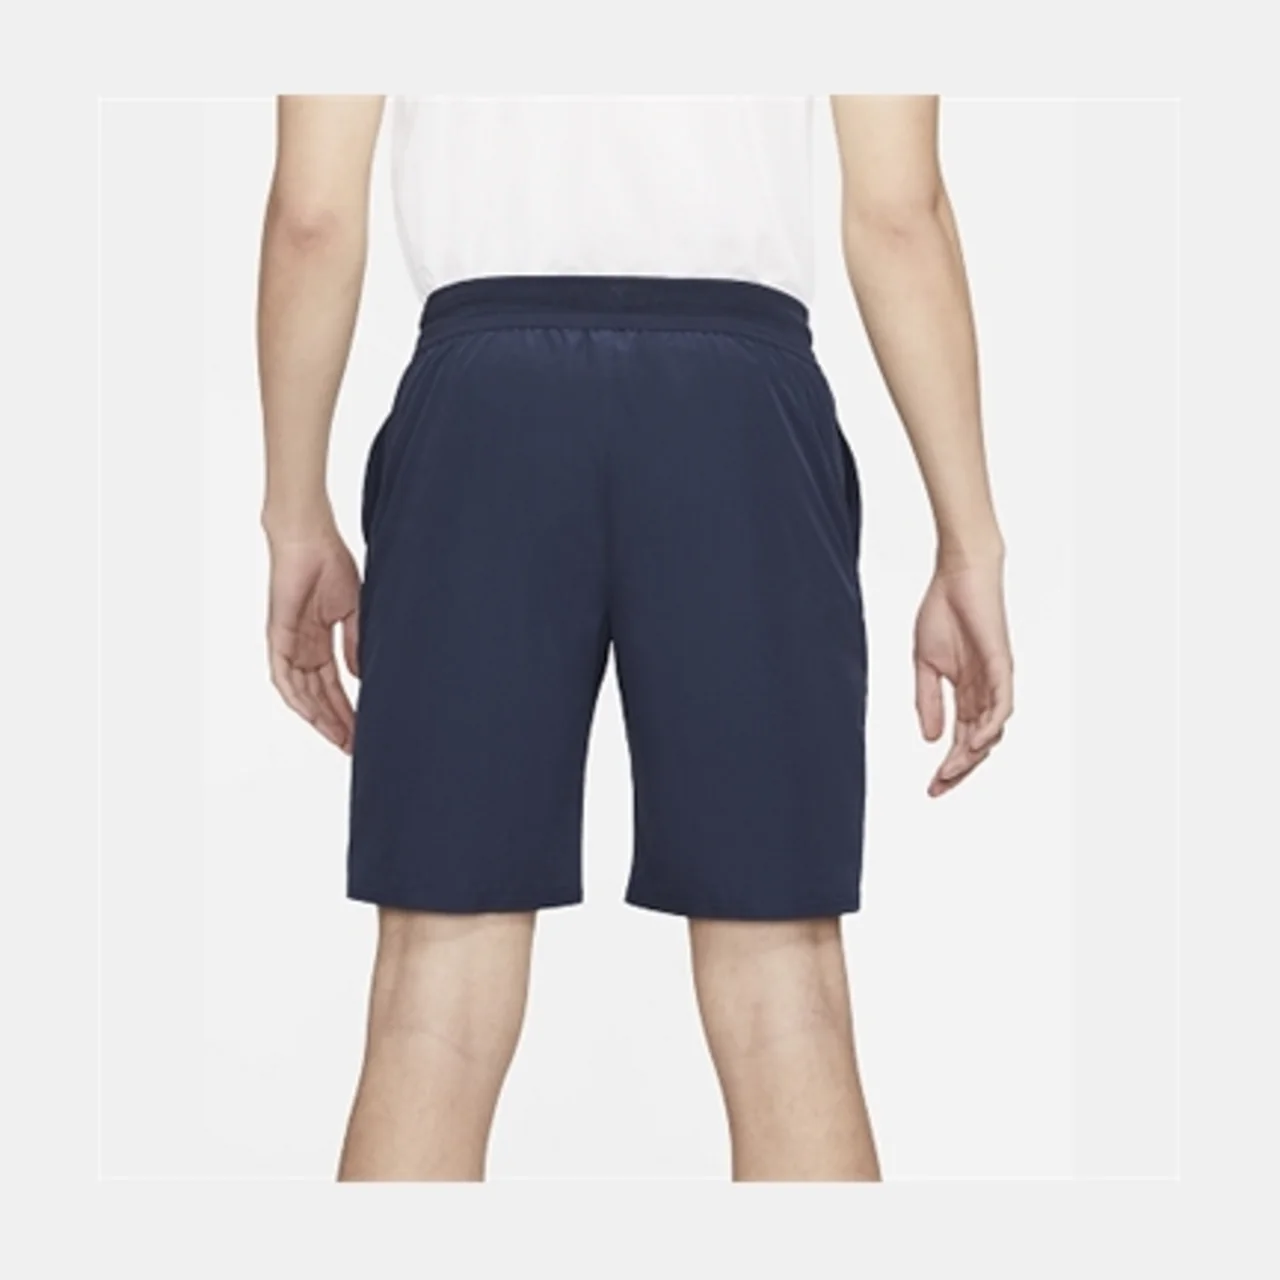 Nike Court Dri-FIT Advantage 9" Shorts Navy/White